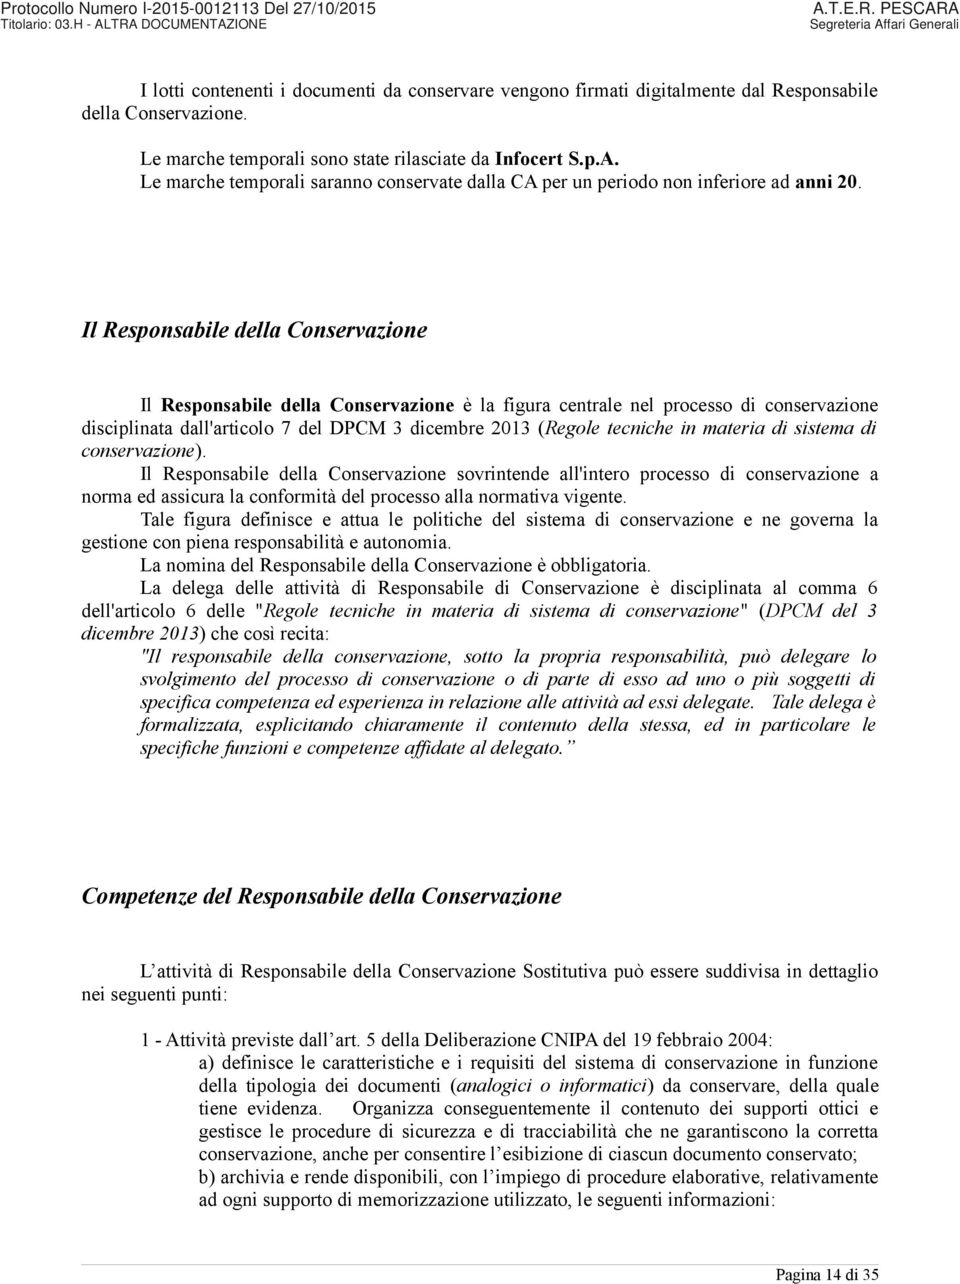 Il Responsabile della Conservazione Il Responsabile della Conservazione è la figura centrale nel processo di conservazione disciplinata dall'articolo 7 del DPCM 3 dicembre 2013 (Regole tecniche in